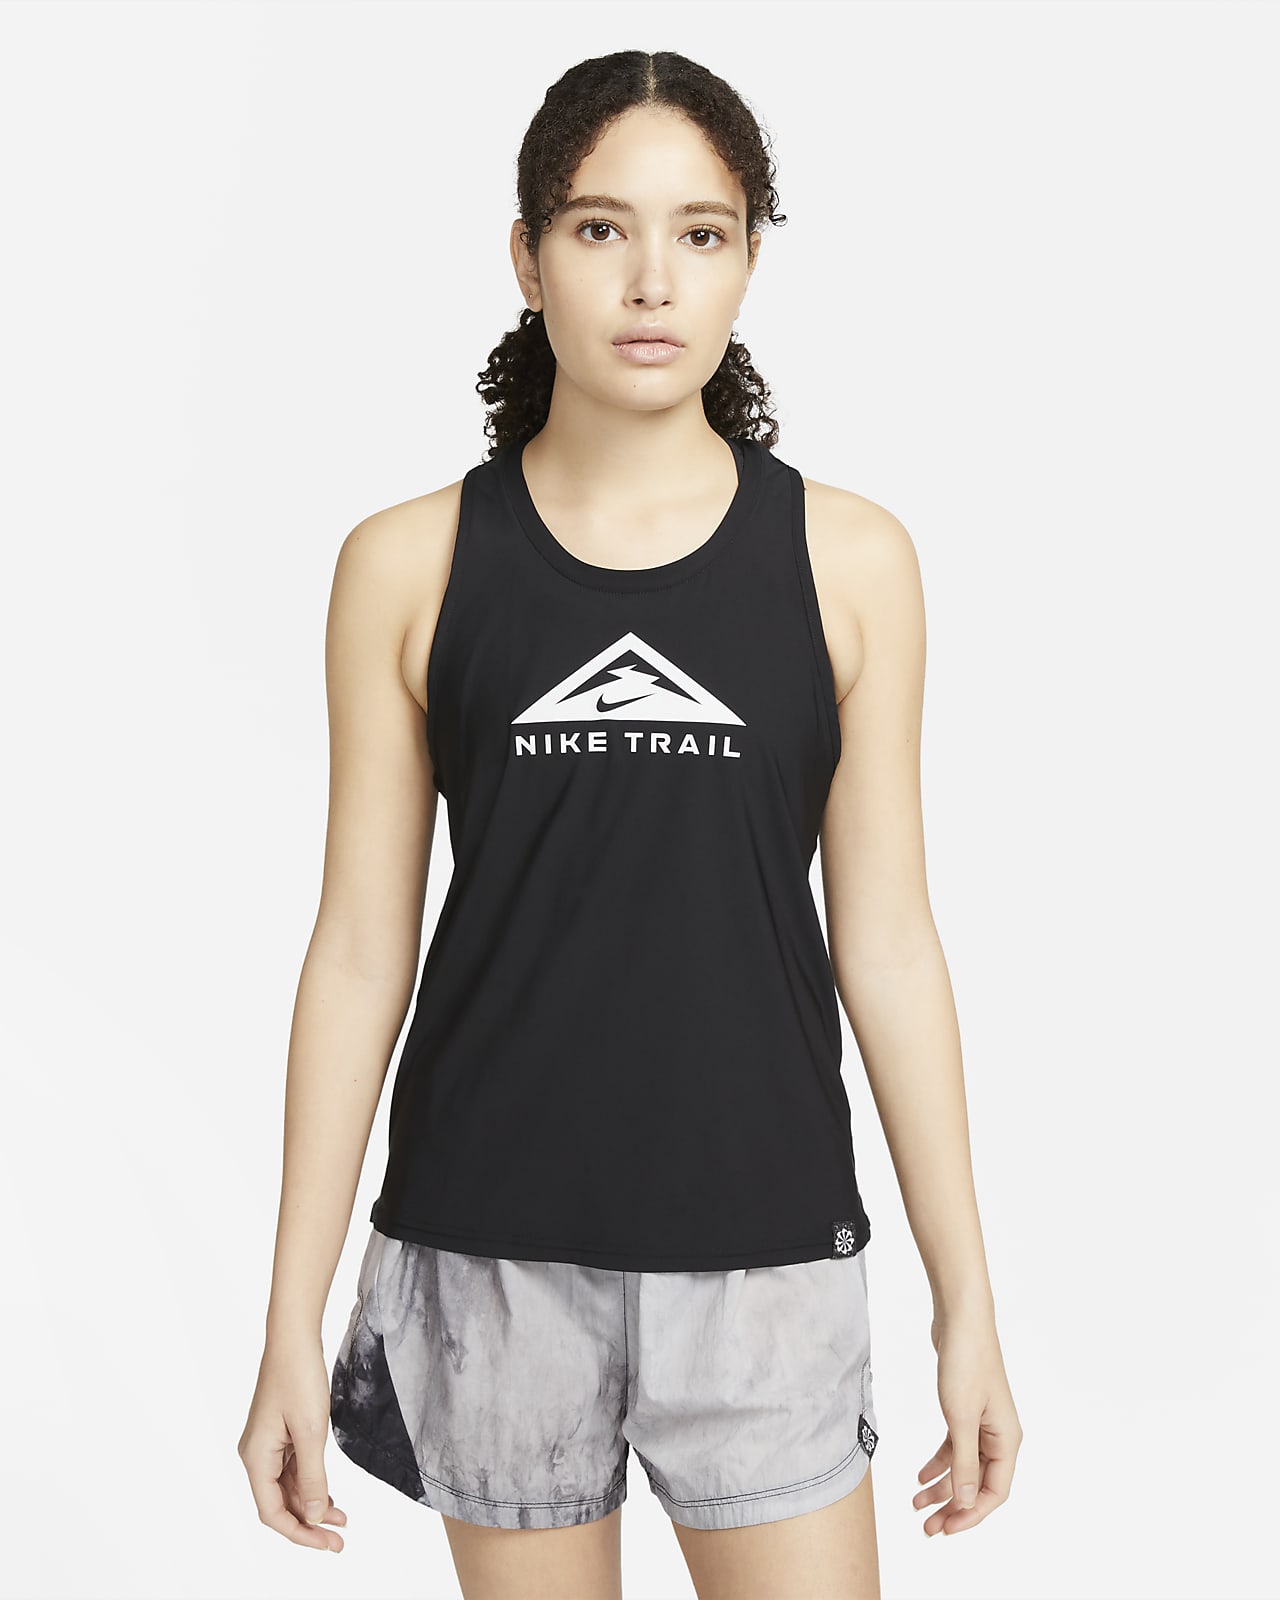 Γυναικείο φανελάκι για τρέξιμο σε ανώμαλο δρόμο Nike Dri-FIT